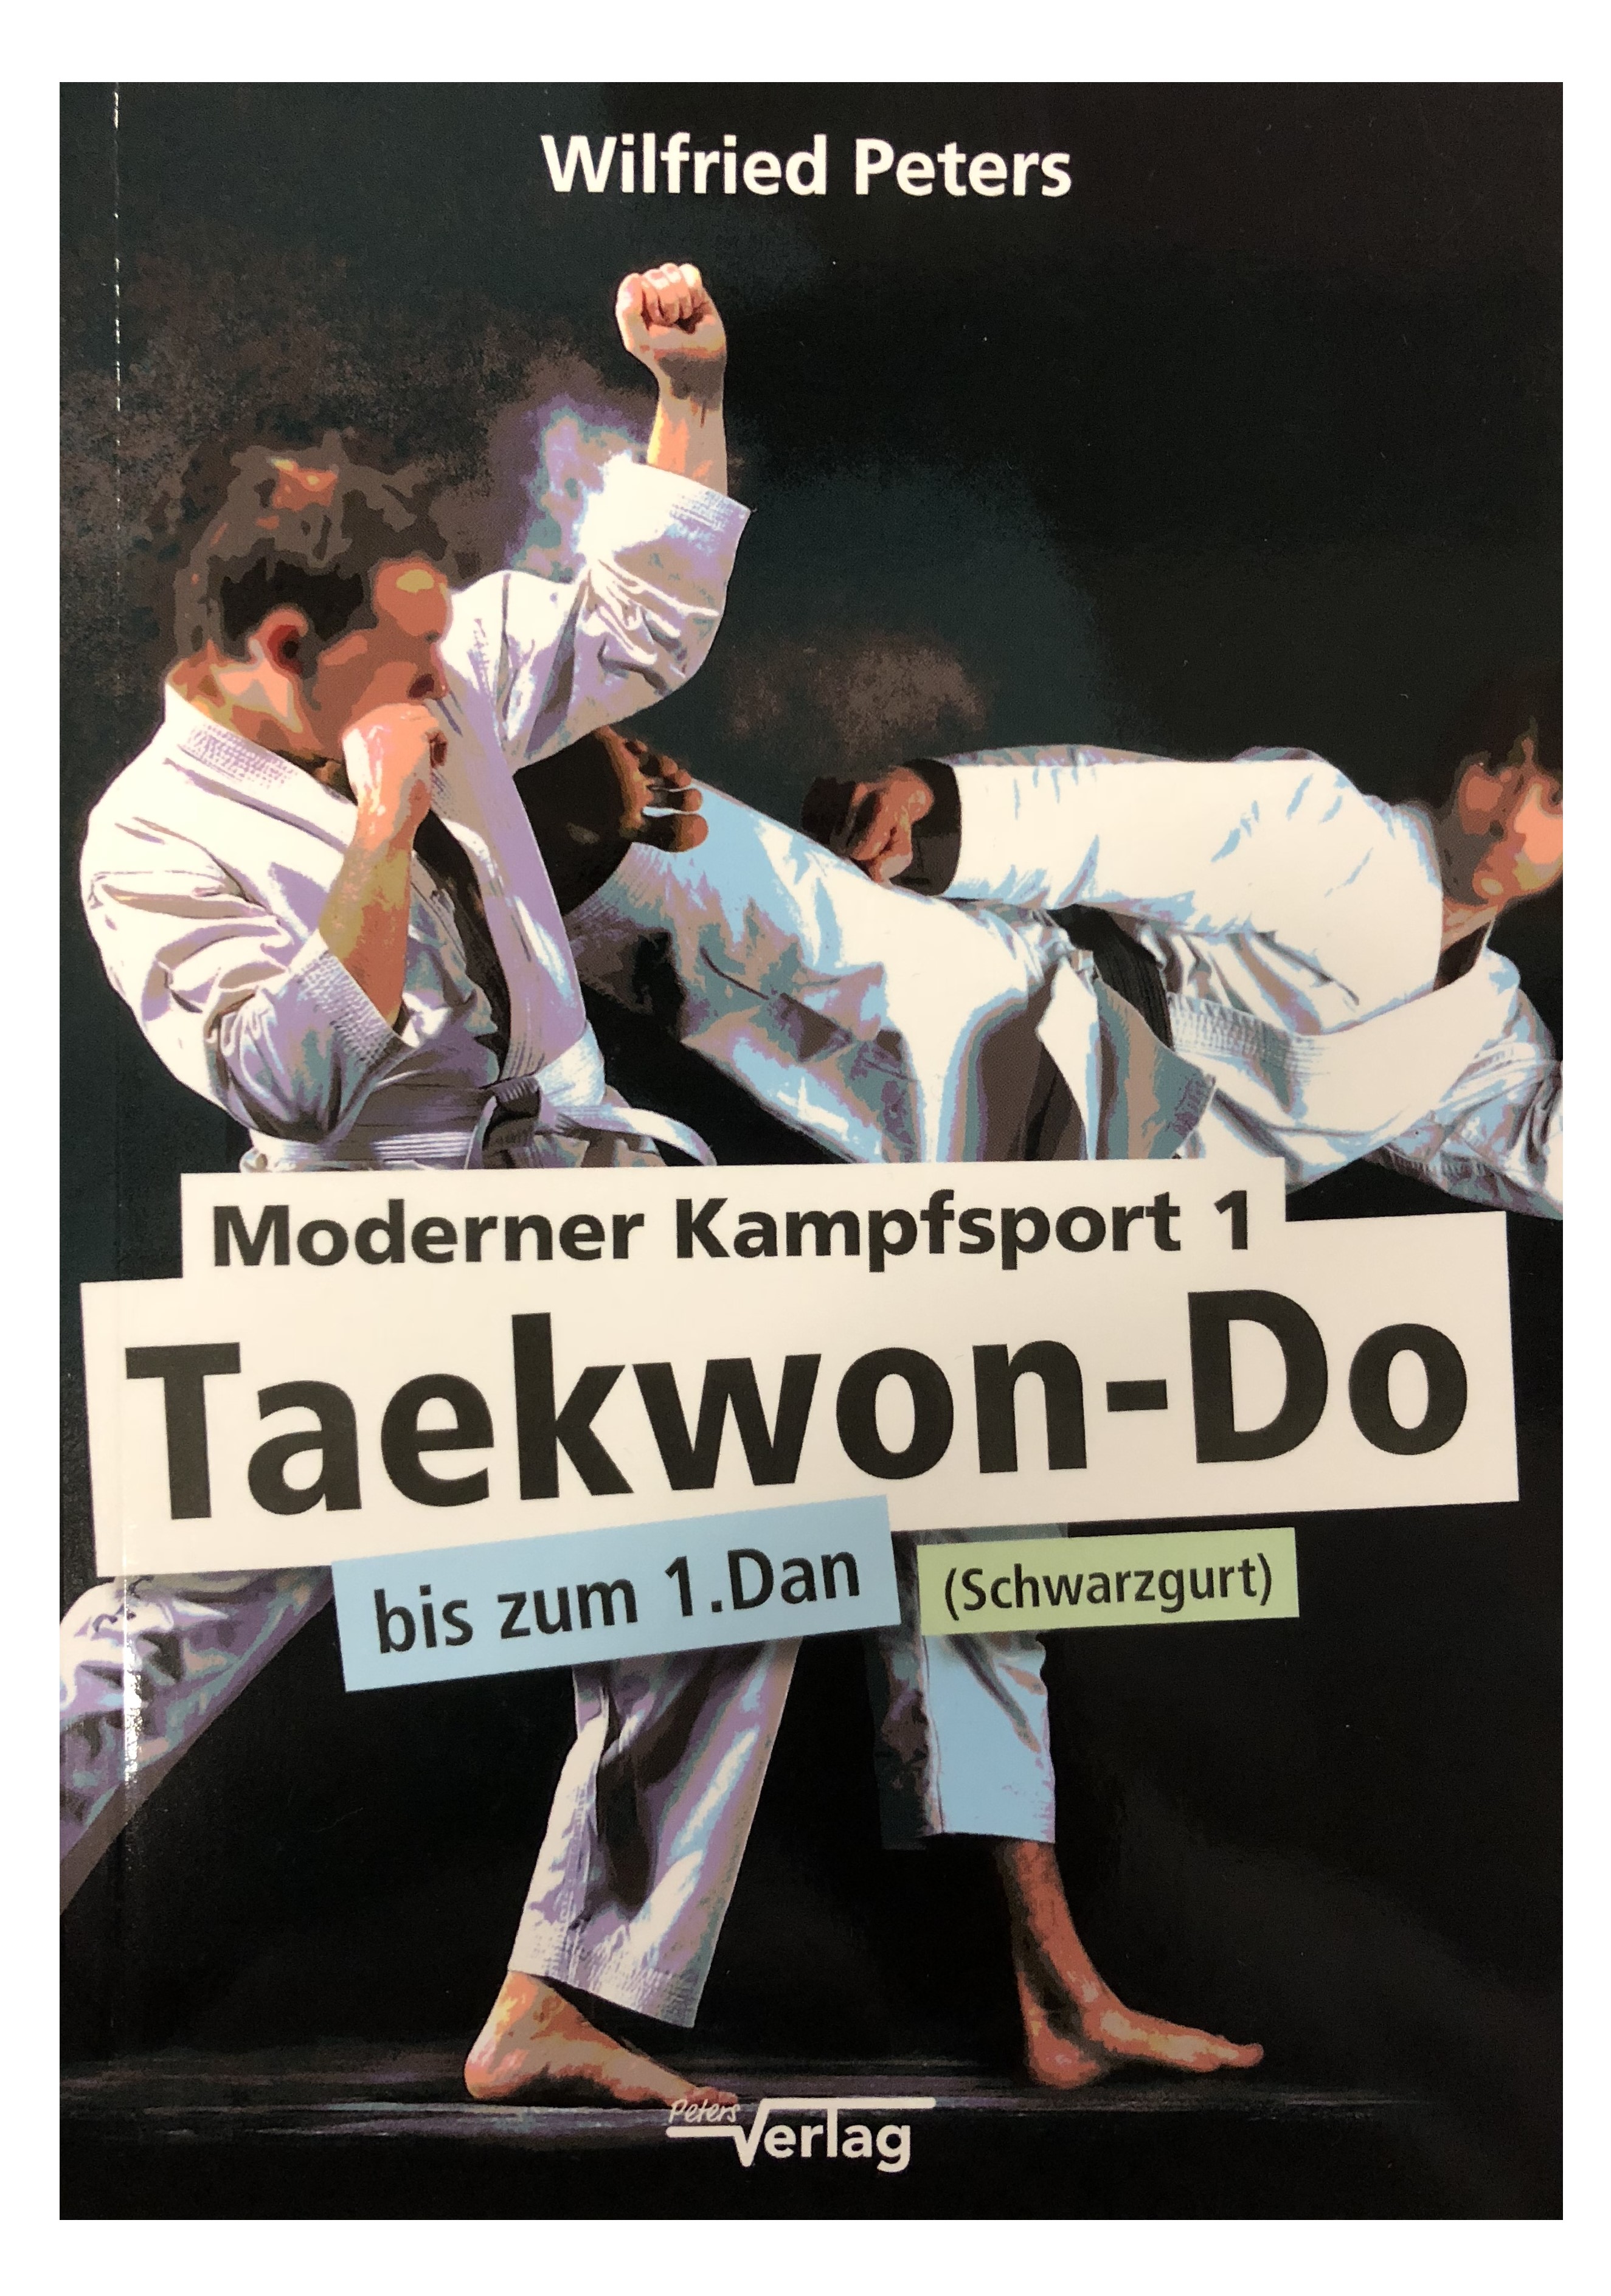 Moderner Kampfsport 1: Taekwon-Do bis zum 1. Dan (Schwarzgurt) (Peters, Wilfried)